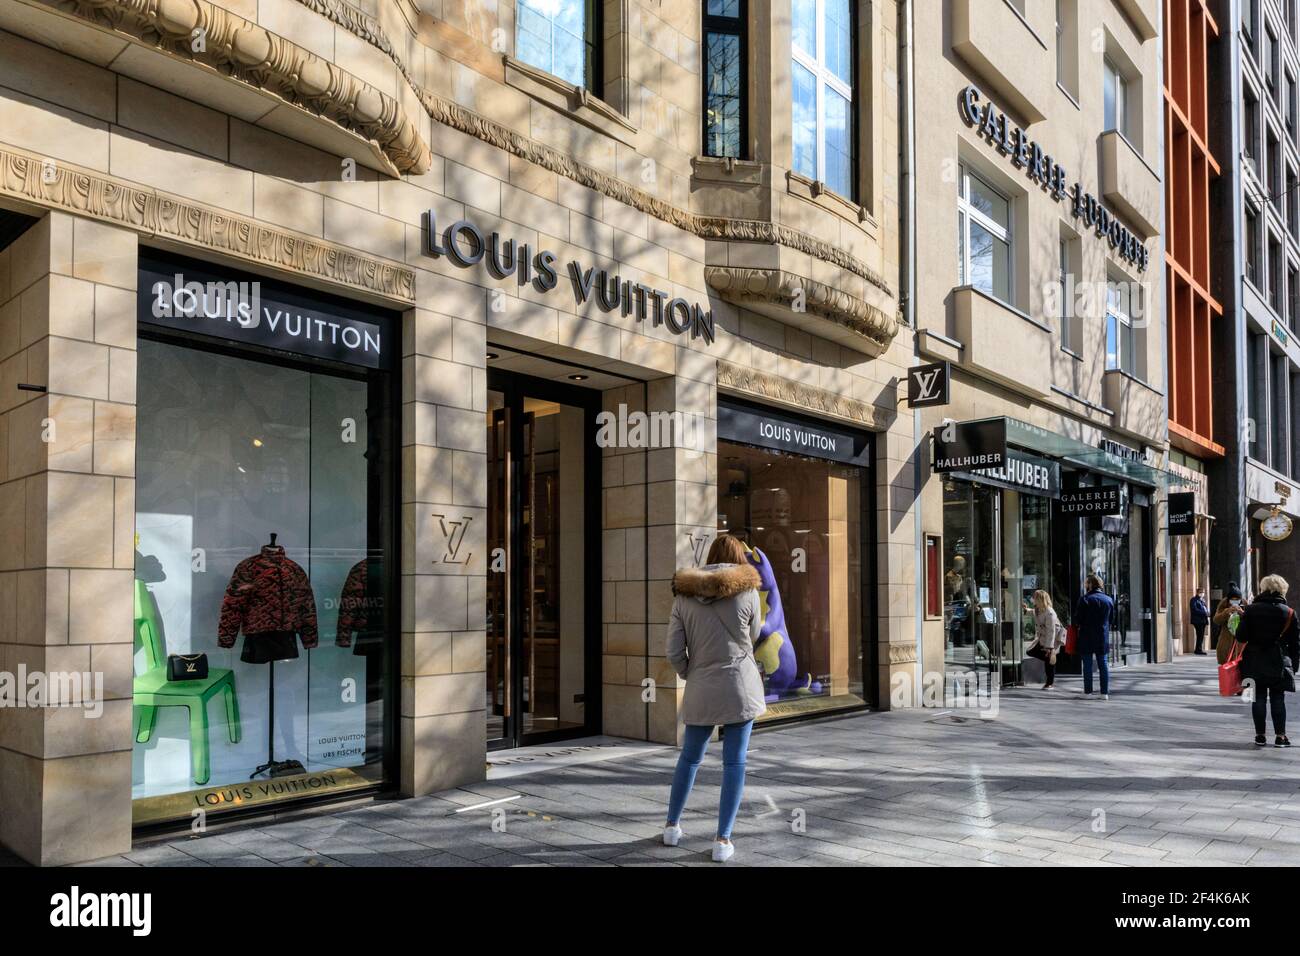 Louis Vuitton Shop in der Königsallee, (kurze Kö), berühmte Einkaufsmeile  in Düsseldorf, Deutschland Stockfotografie - Alamy